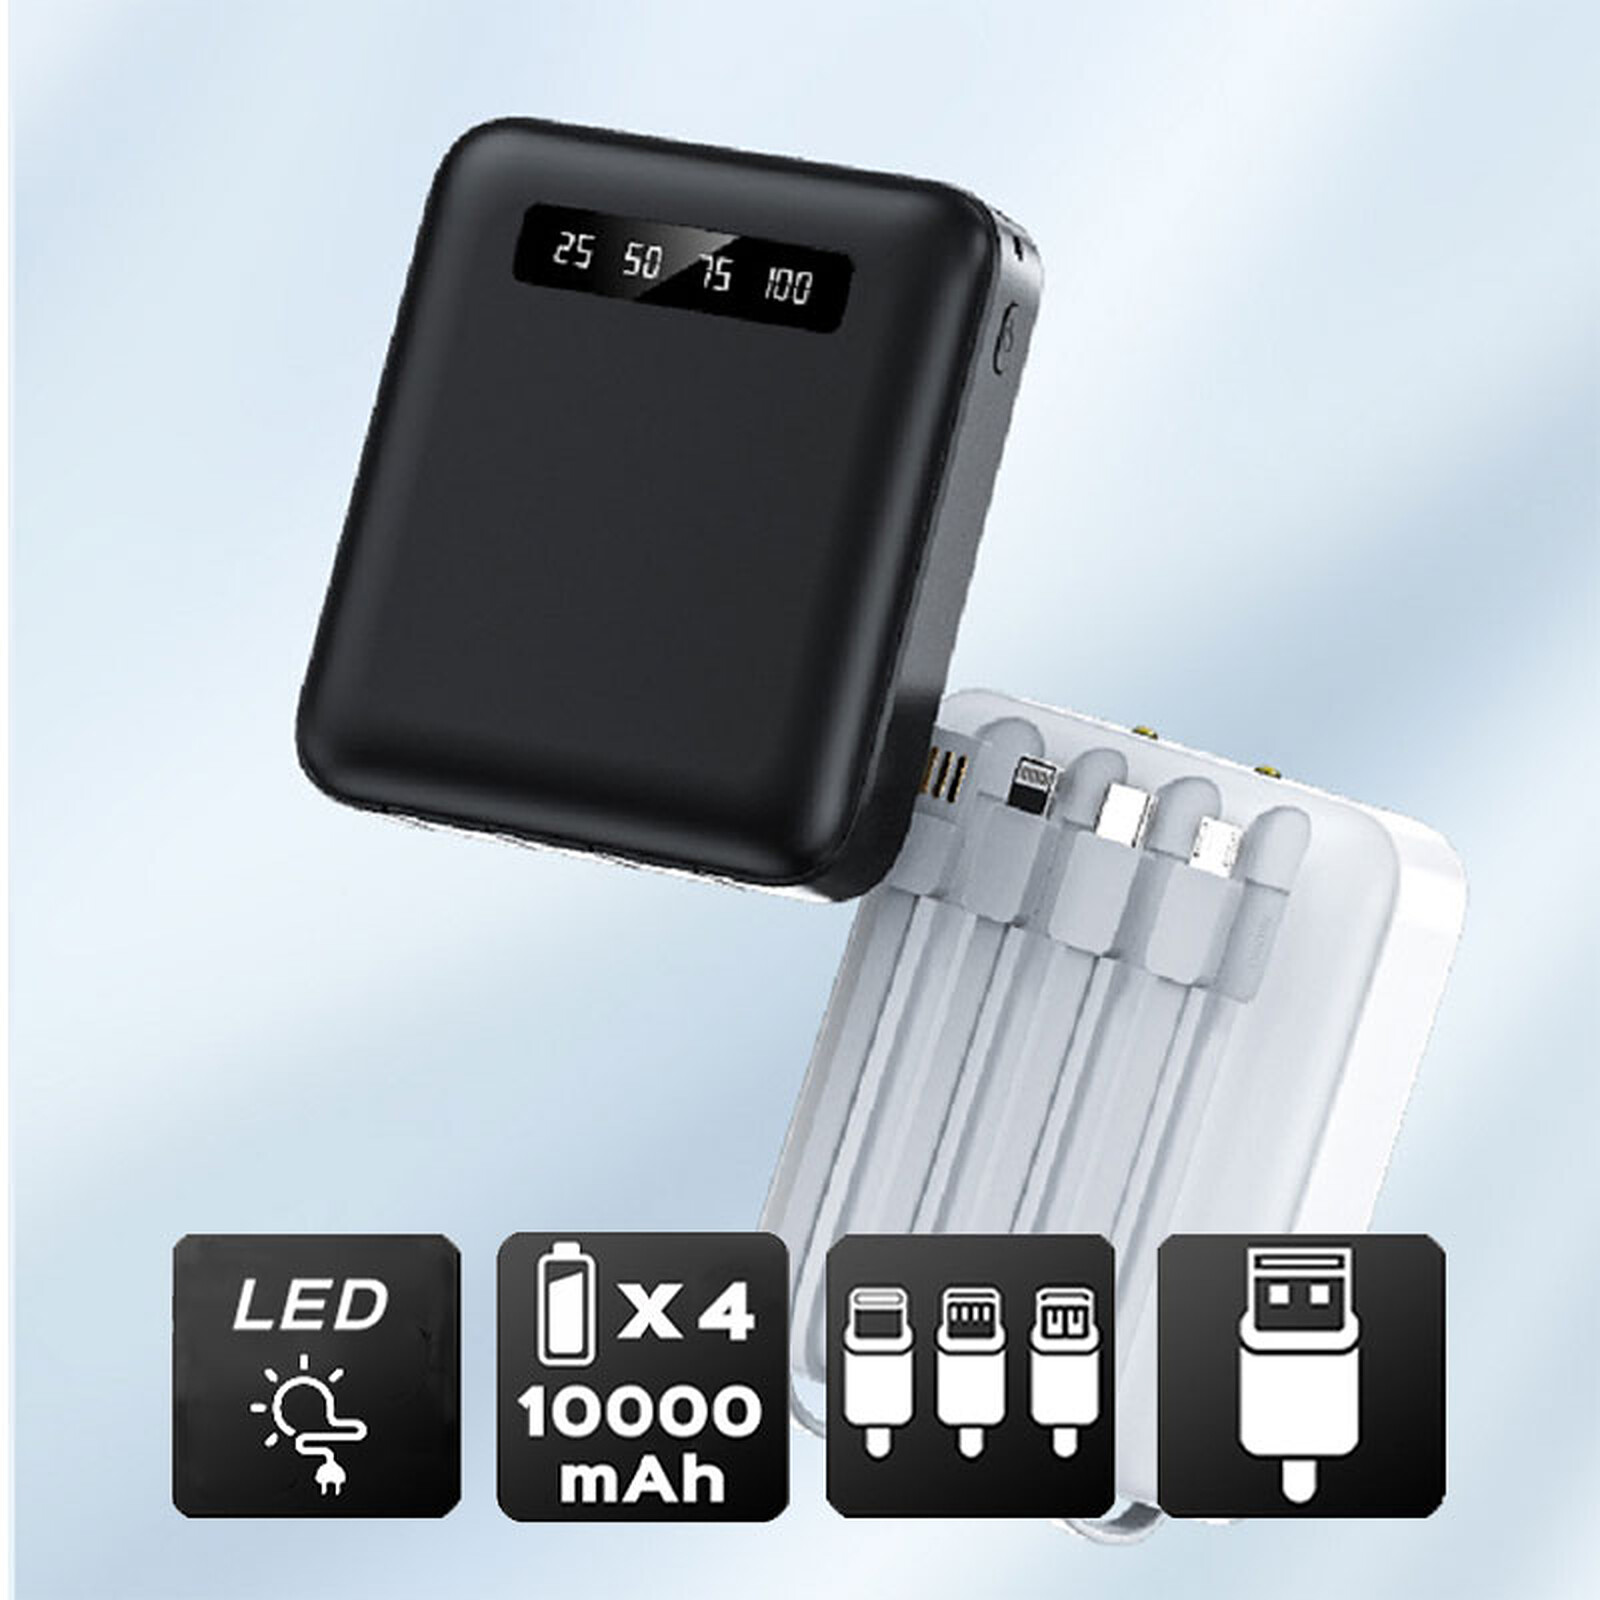 Batería de reserva Akashi 10000 mAh 4 cables (negra) - Batería externa -  LDLC